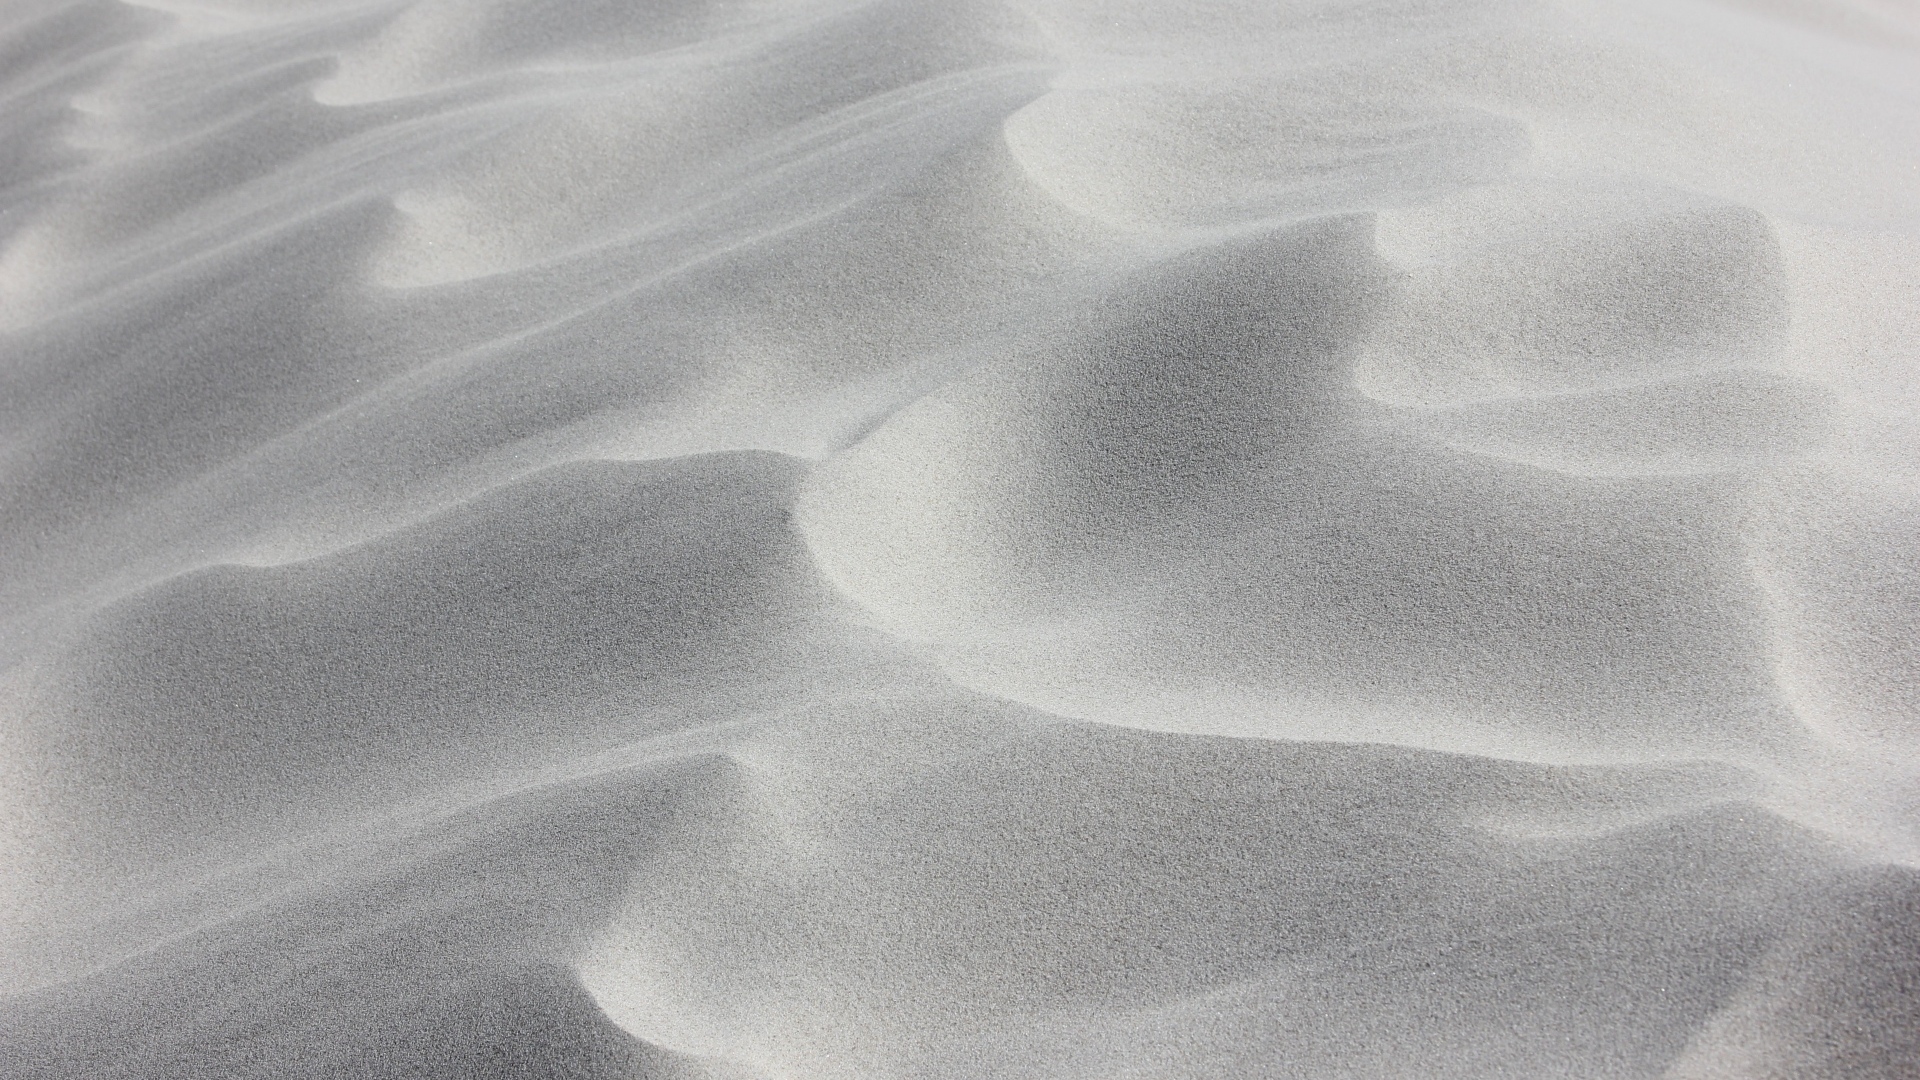 Волны на белом песке в пустыне 